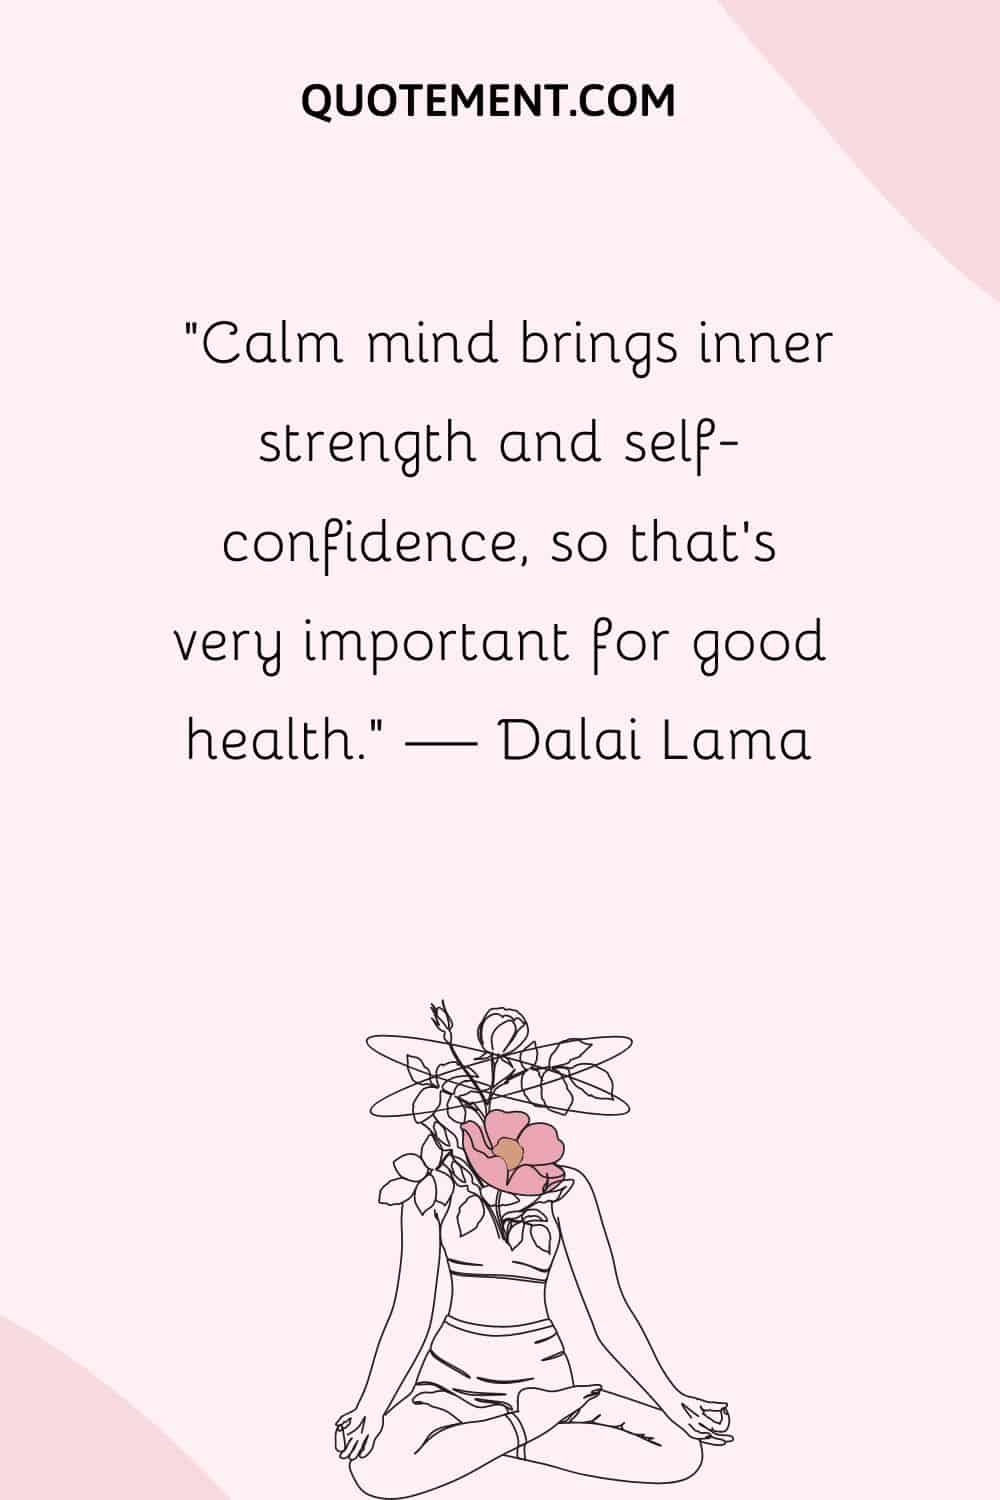 Una mente tranquila aporta fuerza interior y confianza en uno mismo, lo que es muy importante para gozar de buena salud.